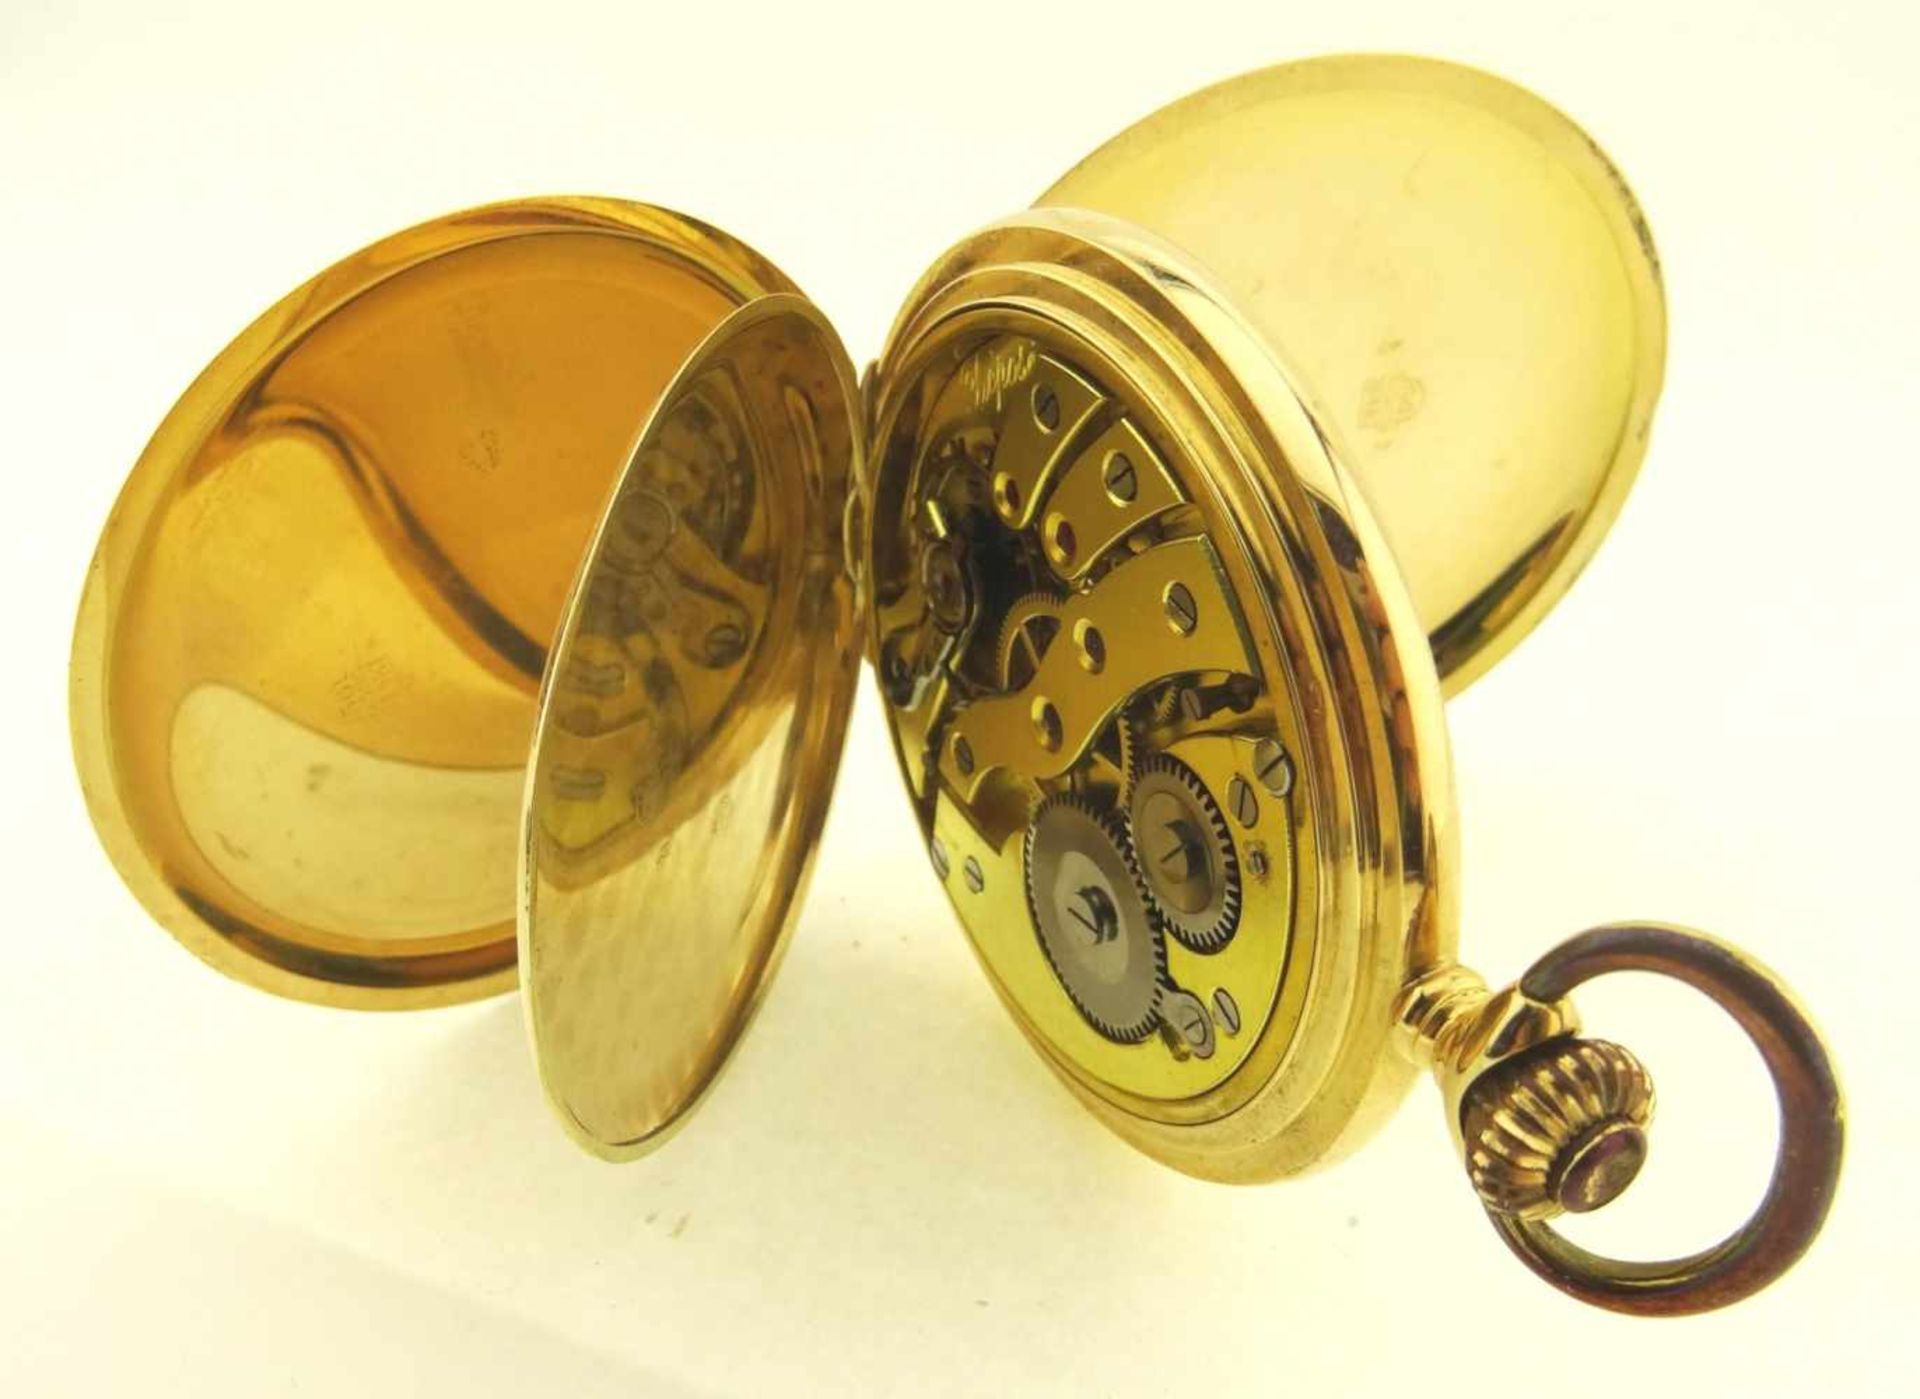 Sprungdeckeltaschenuhr Gold 585 mit 3 Deckeln in Gold 585, Uhrwerk mit Ankerhemmung läuft gut, - Bild 4 aus 6